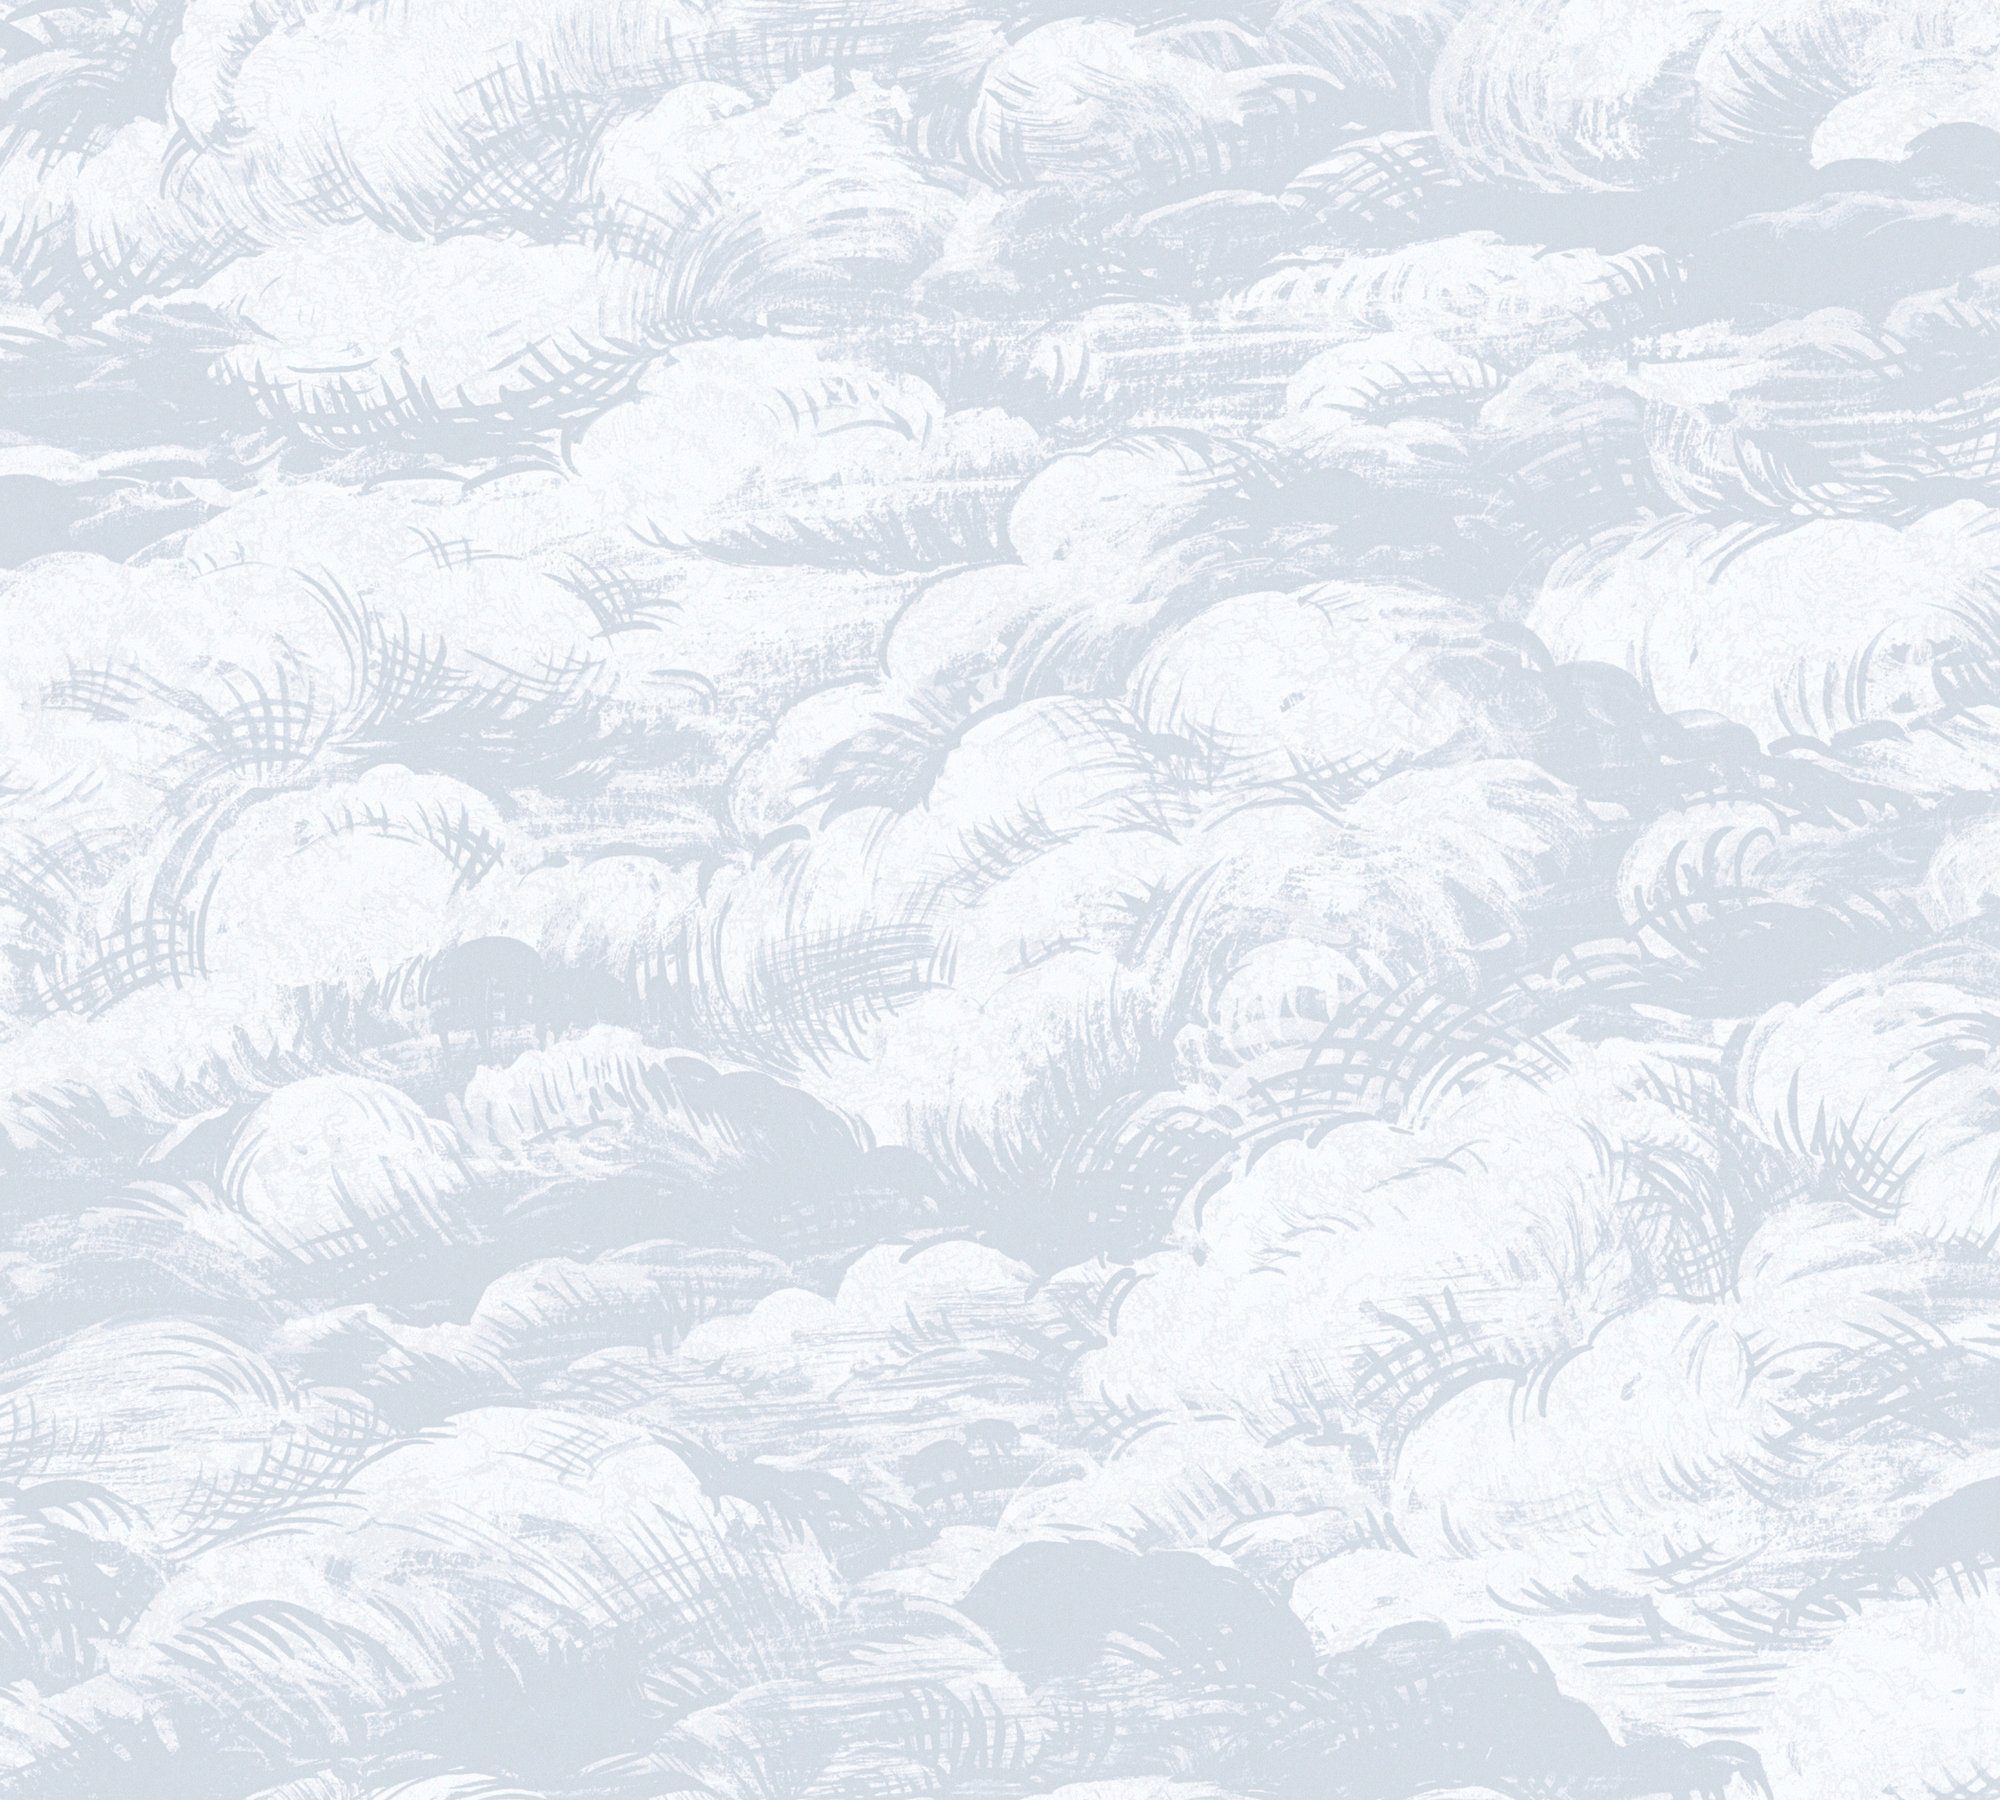 Jungle Chic, Paper glatt, Vliestapete Wolken Architects grau/weiß2 Tapete